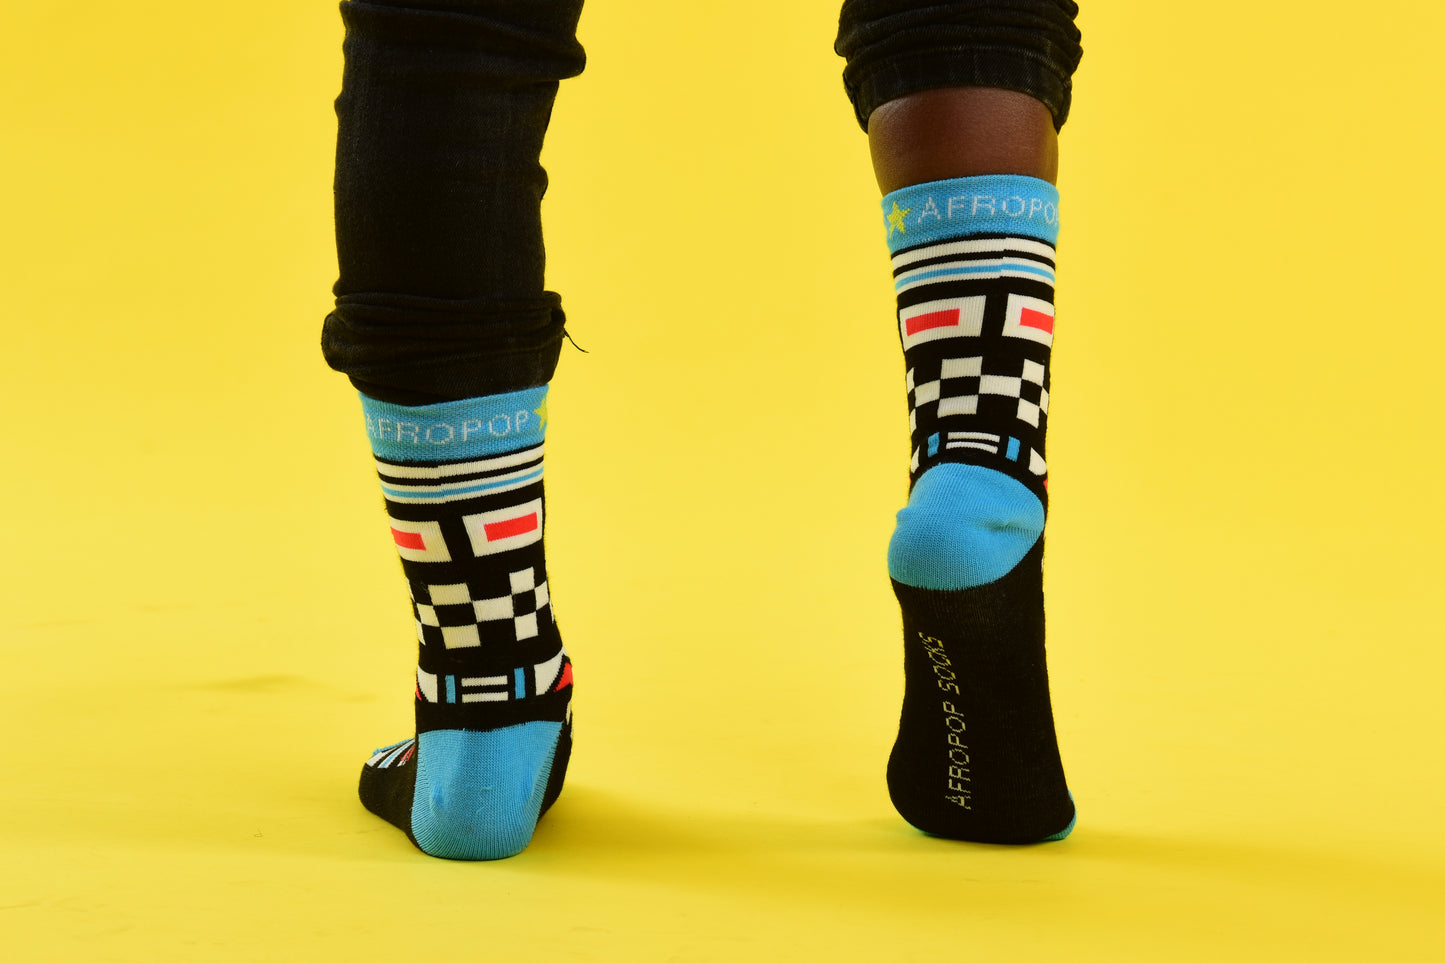 KIDS Ndebele Blue Socks